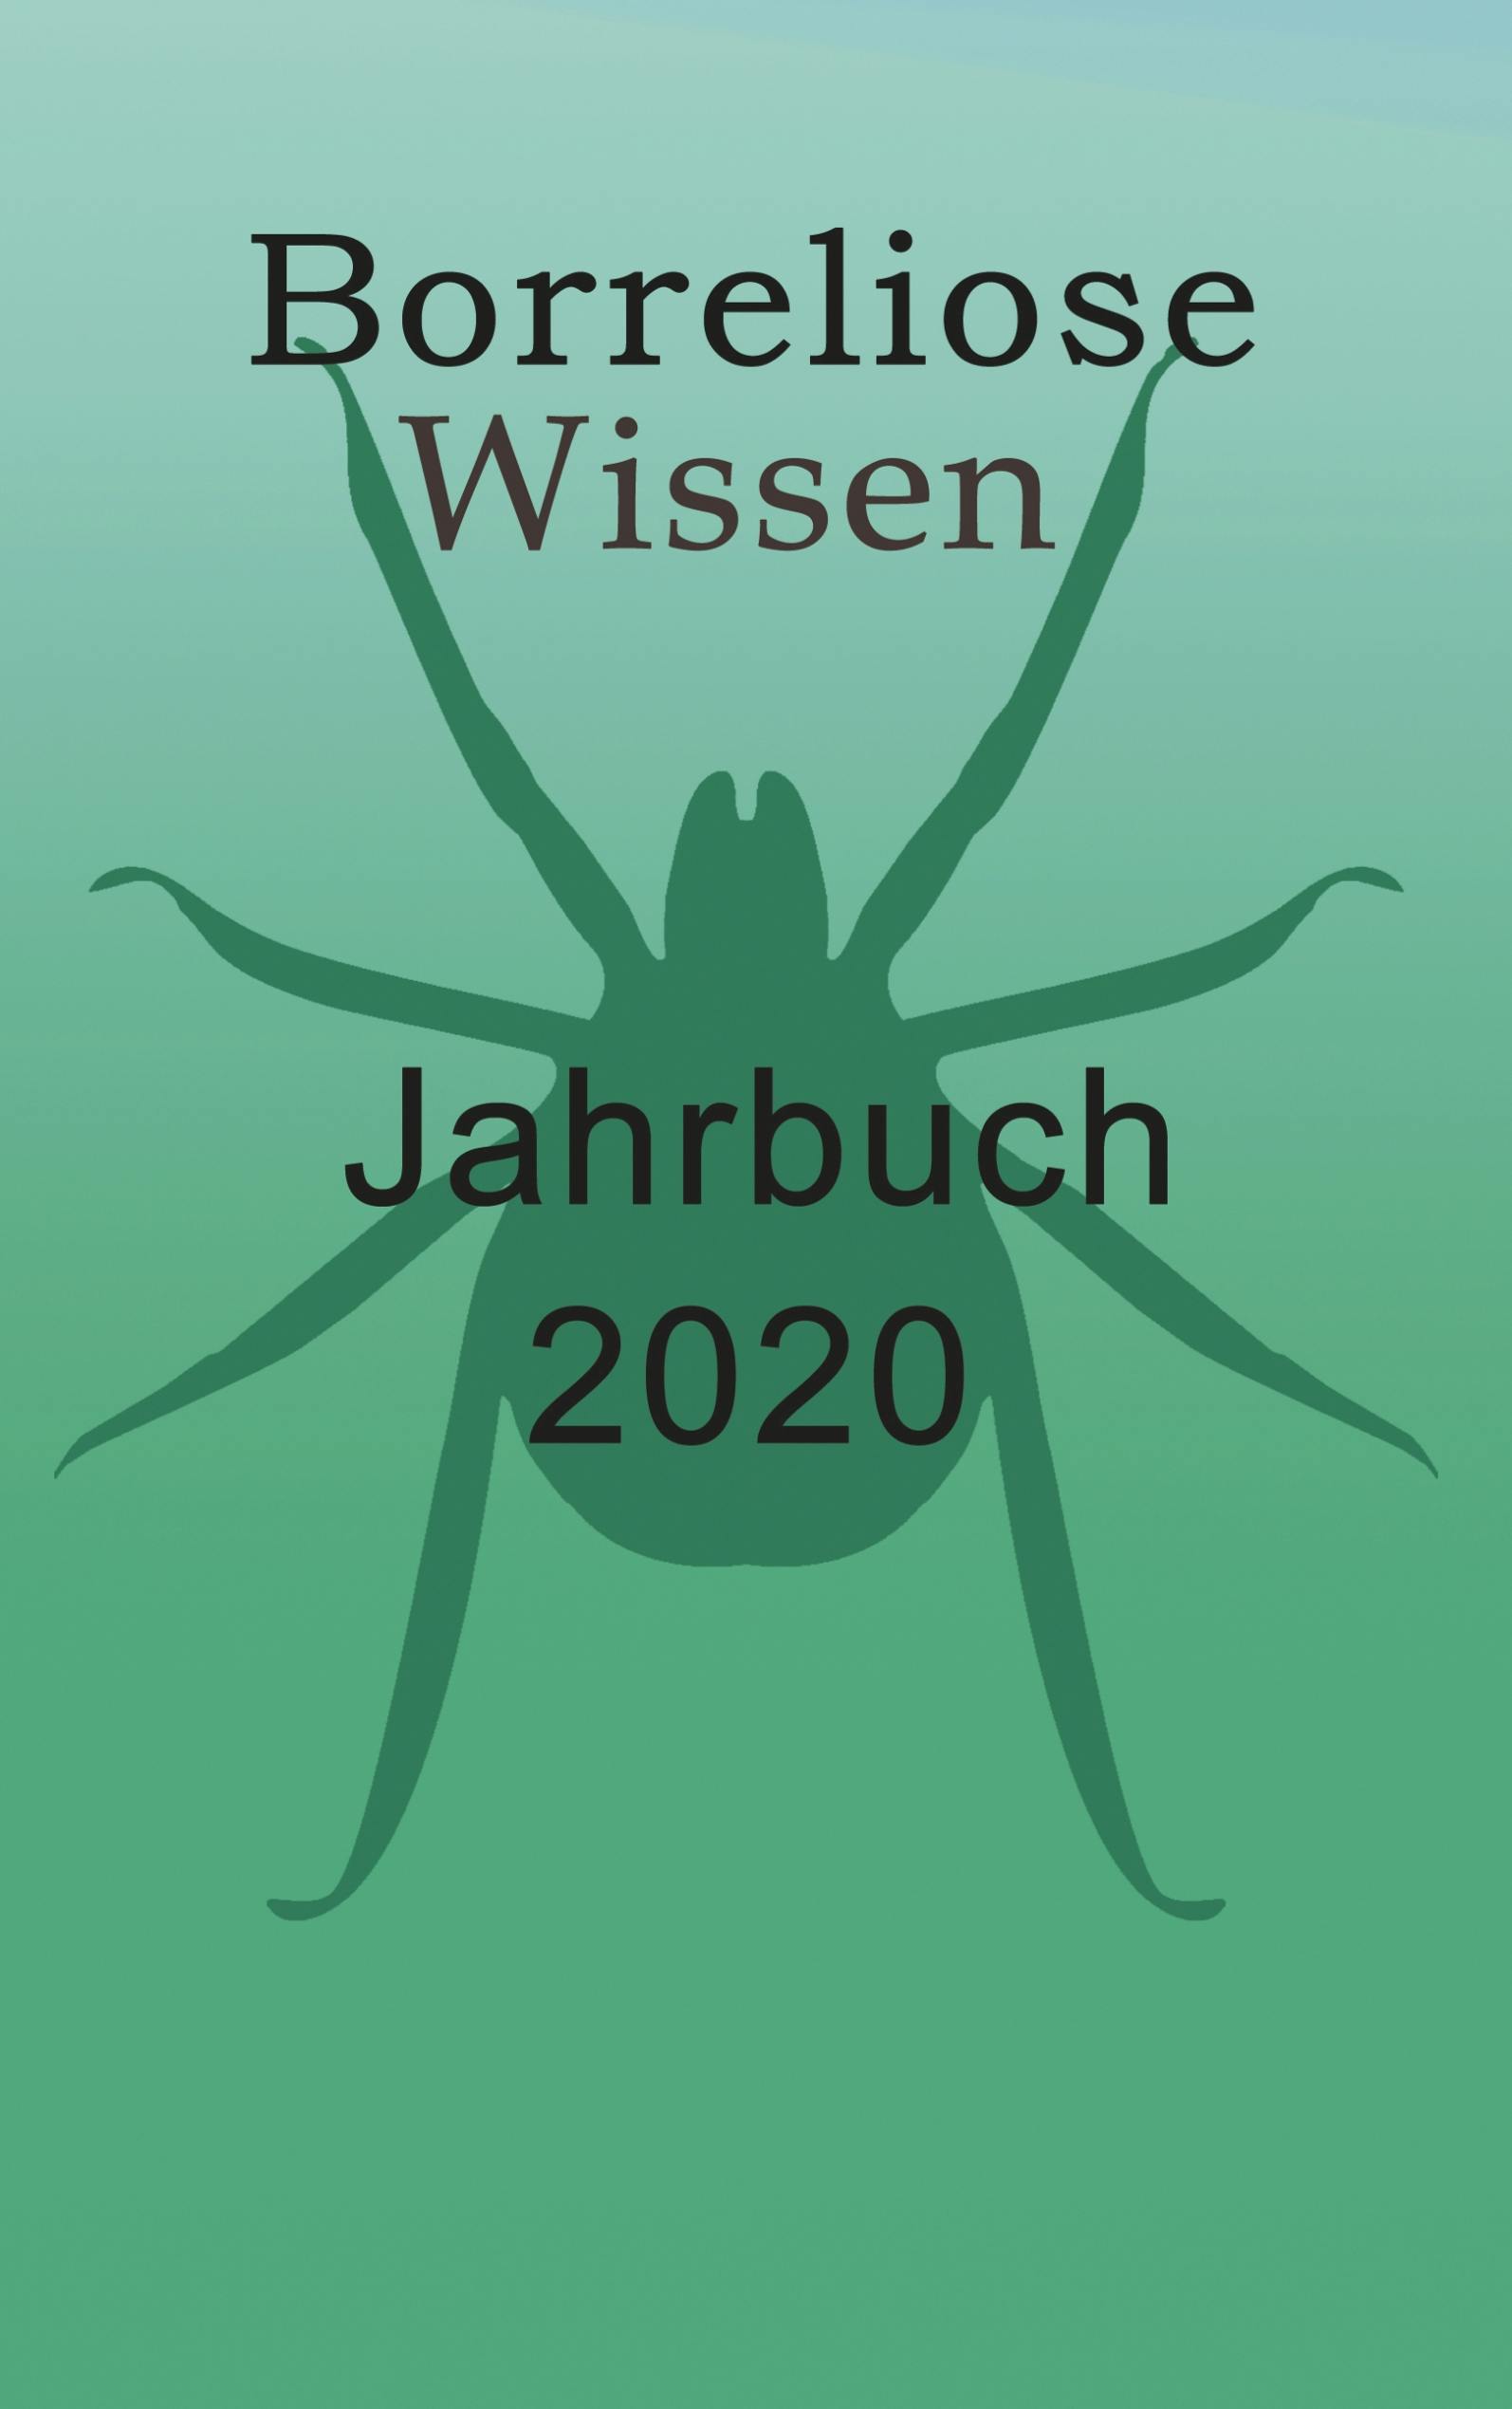 Borreliose Jahrbuch 2020 - Ute Fischer, Bernhard Siegmund